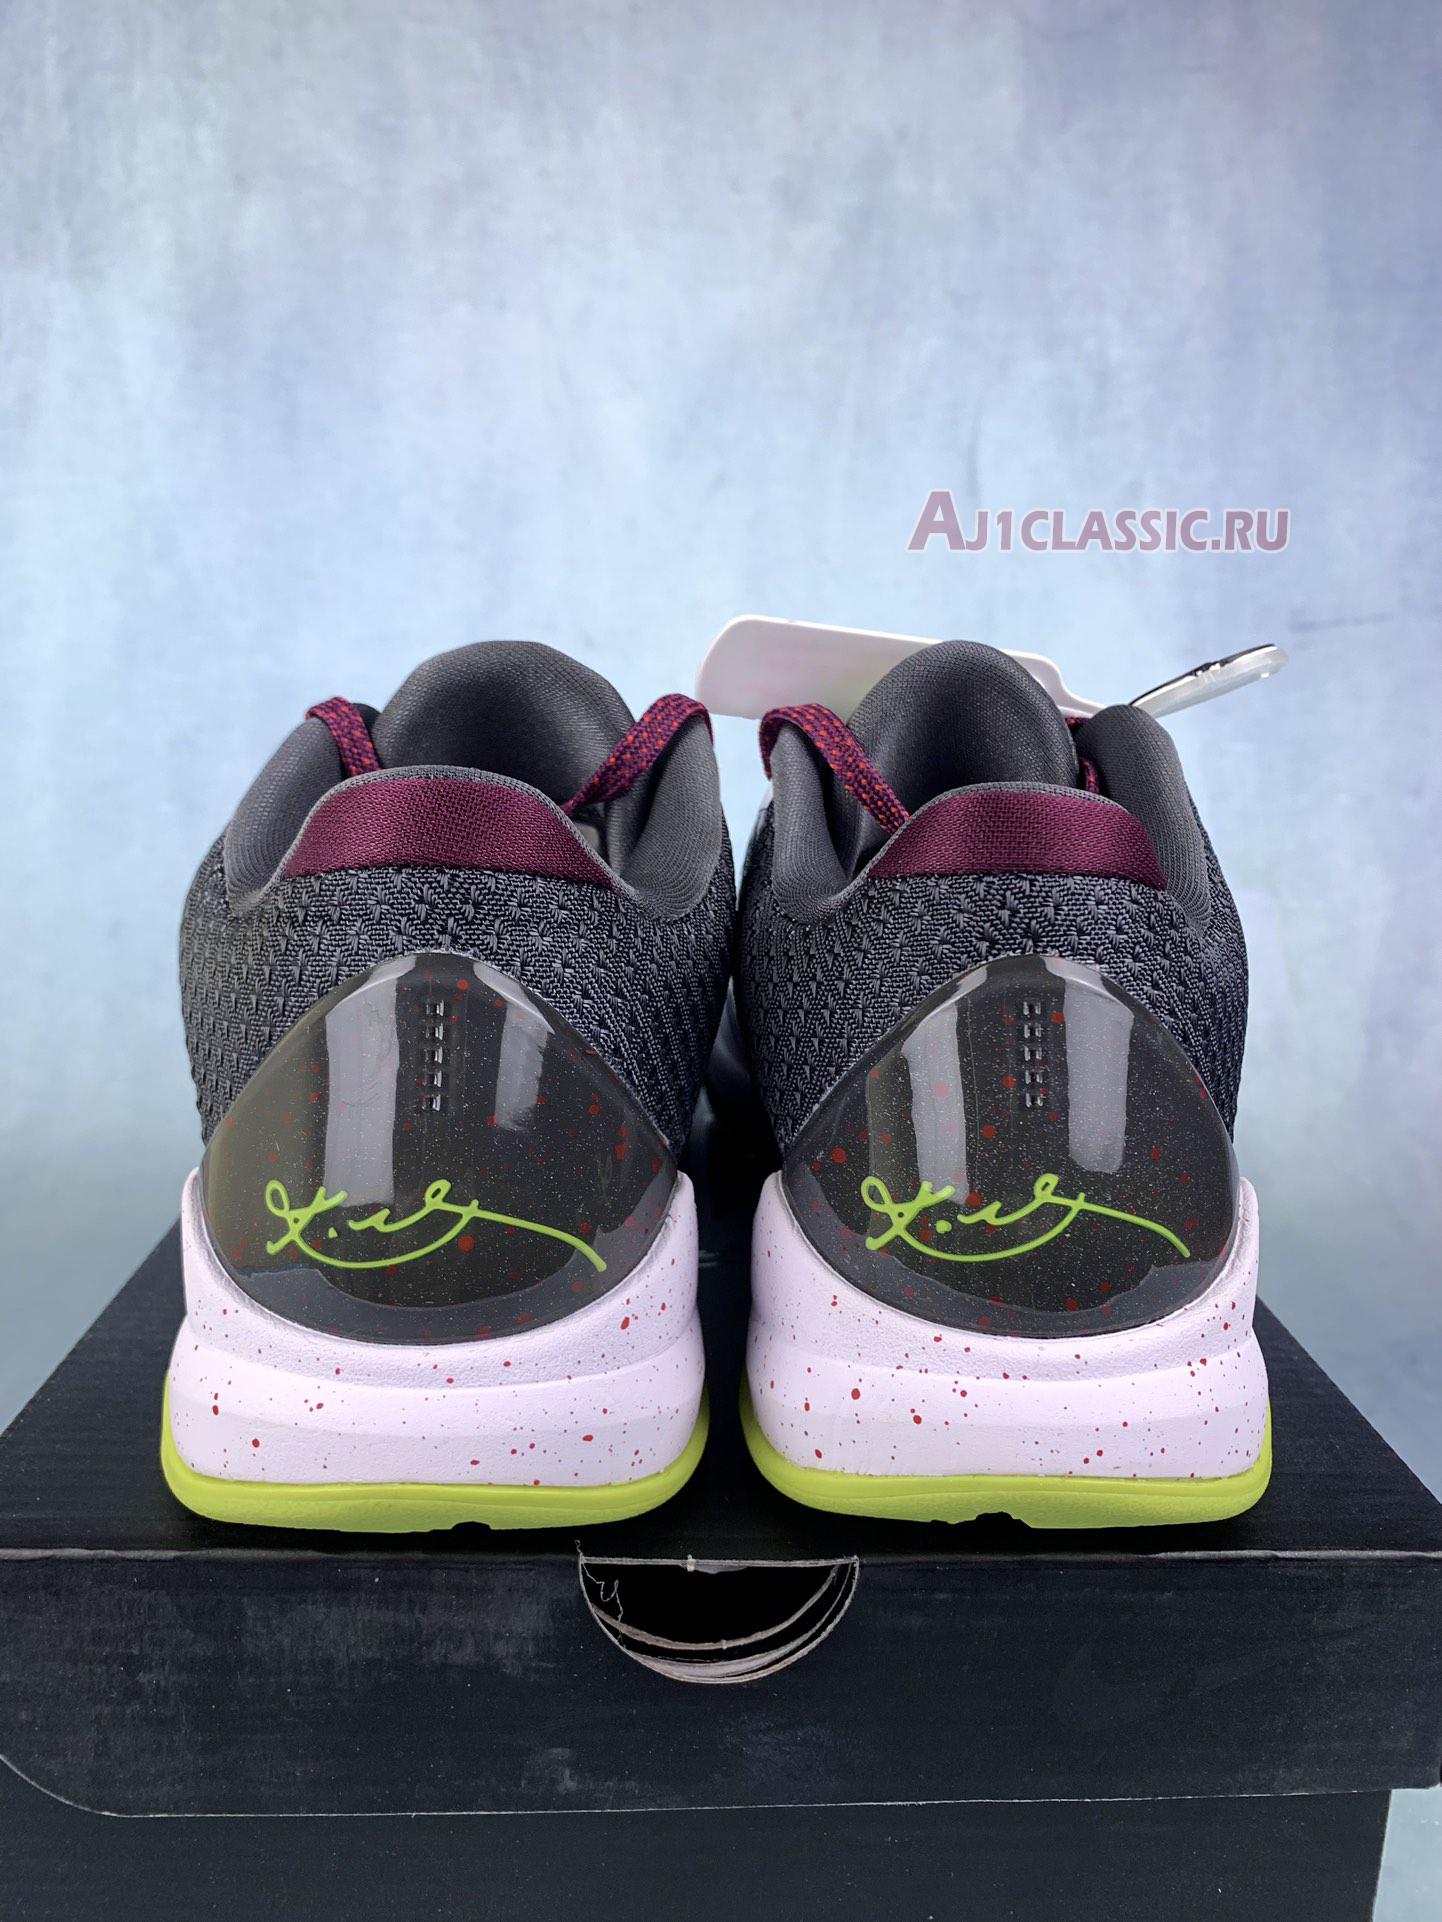 Nike Zoom Kobe 5 Protro "Chaos" CD4991-100